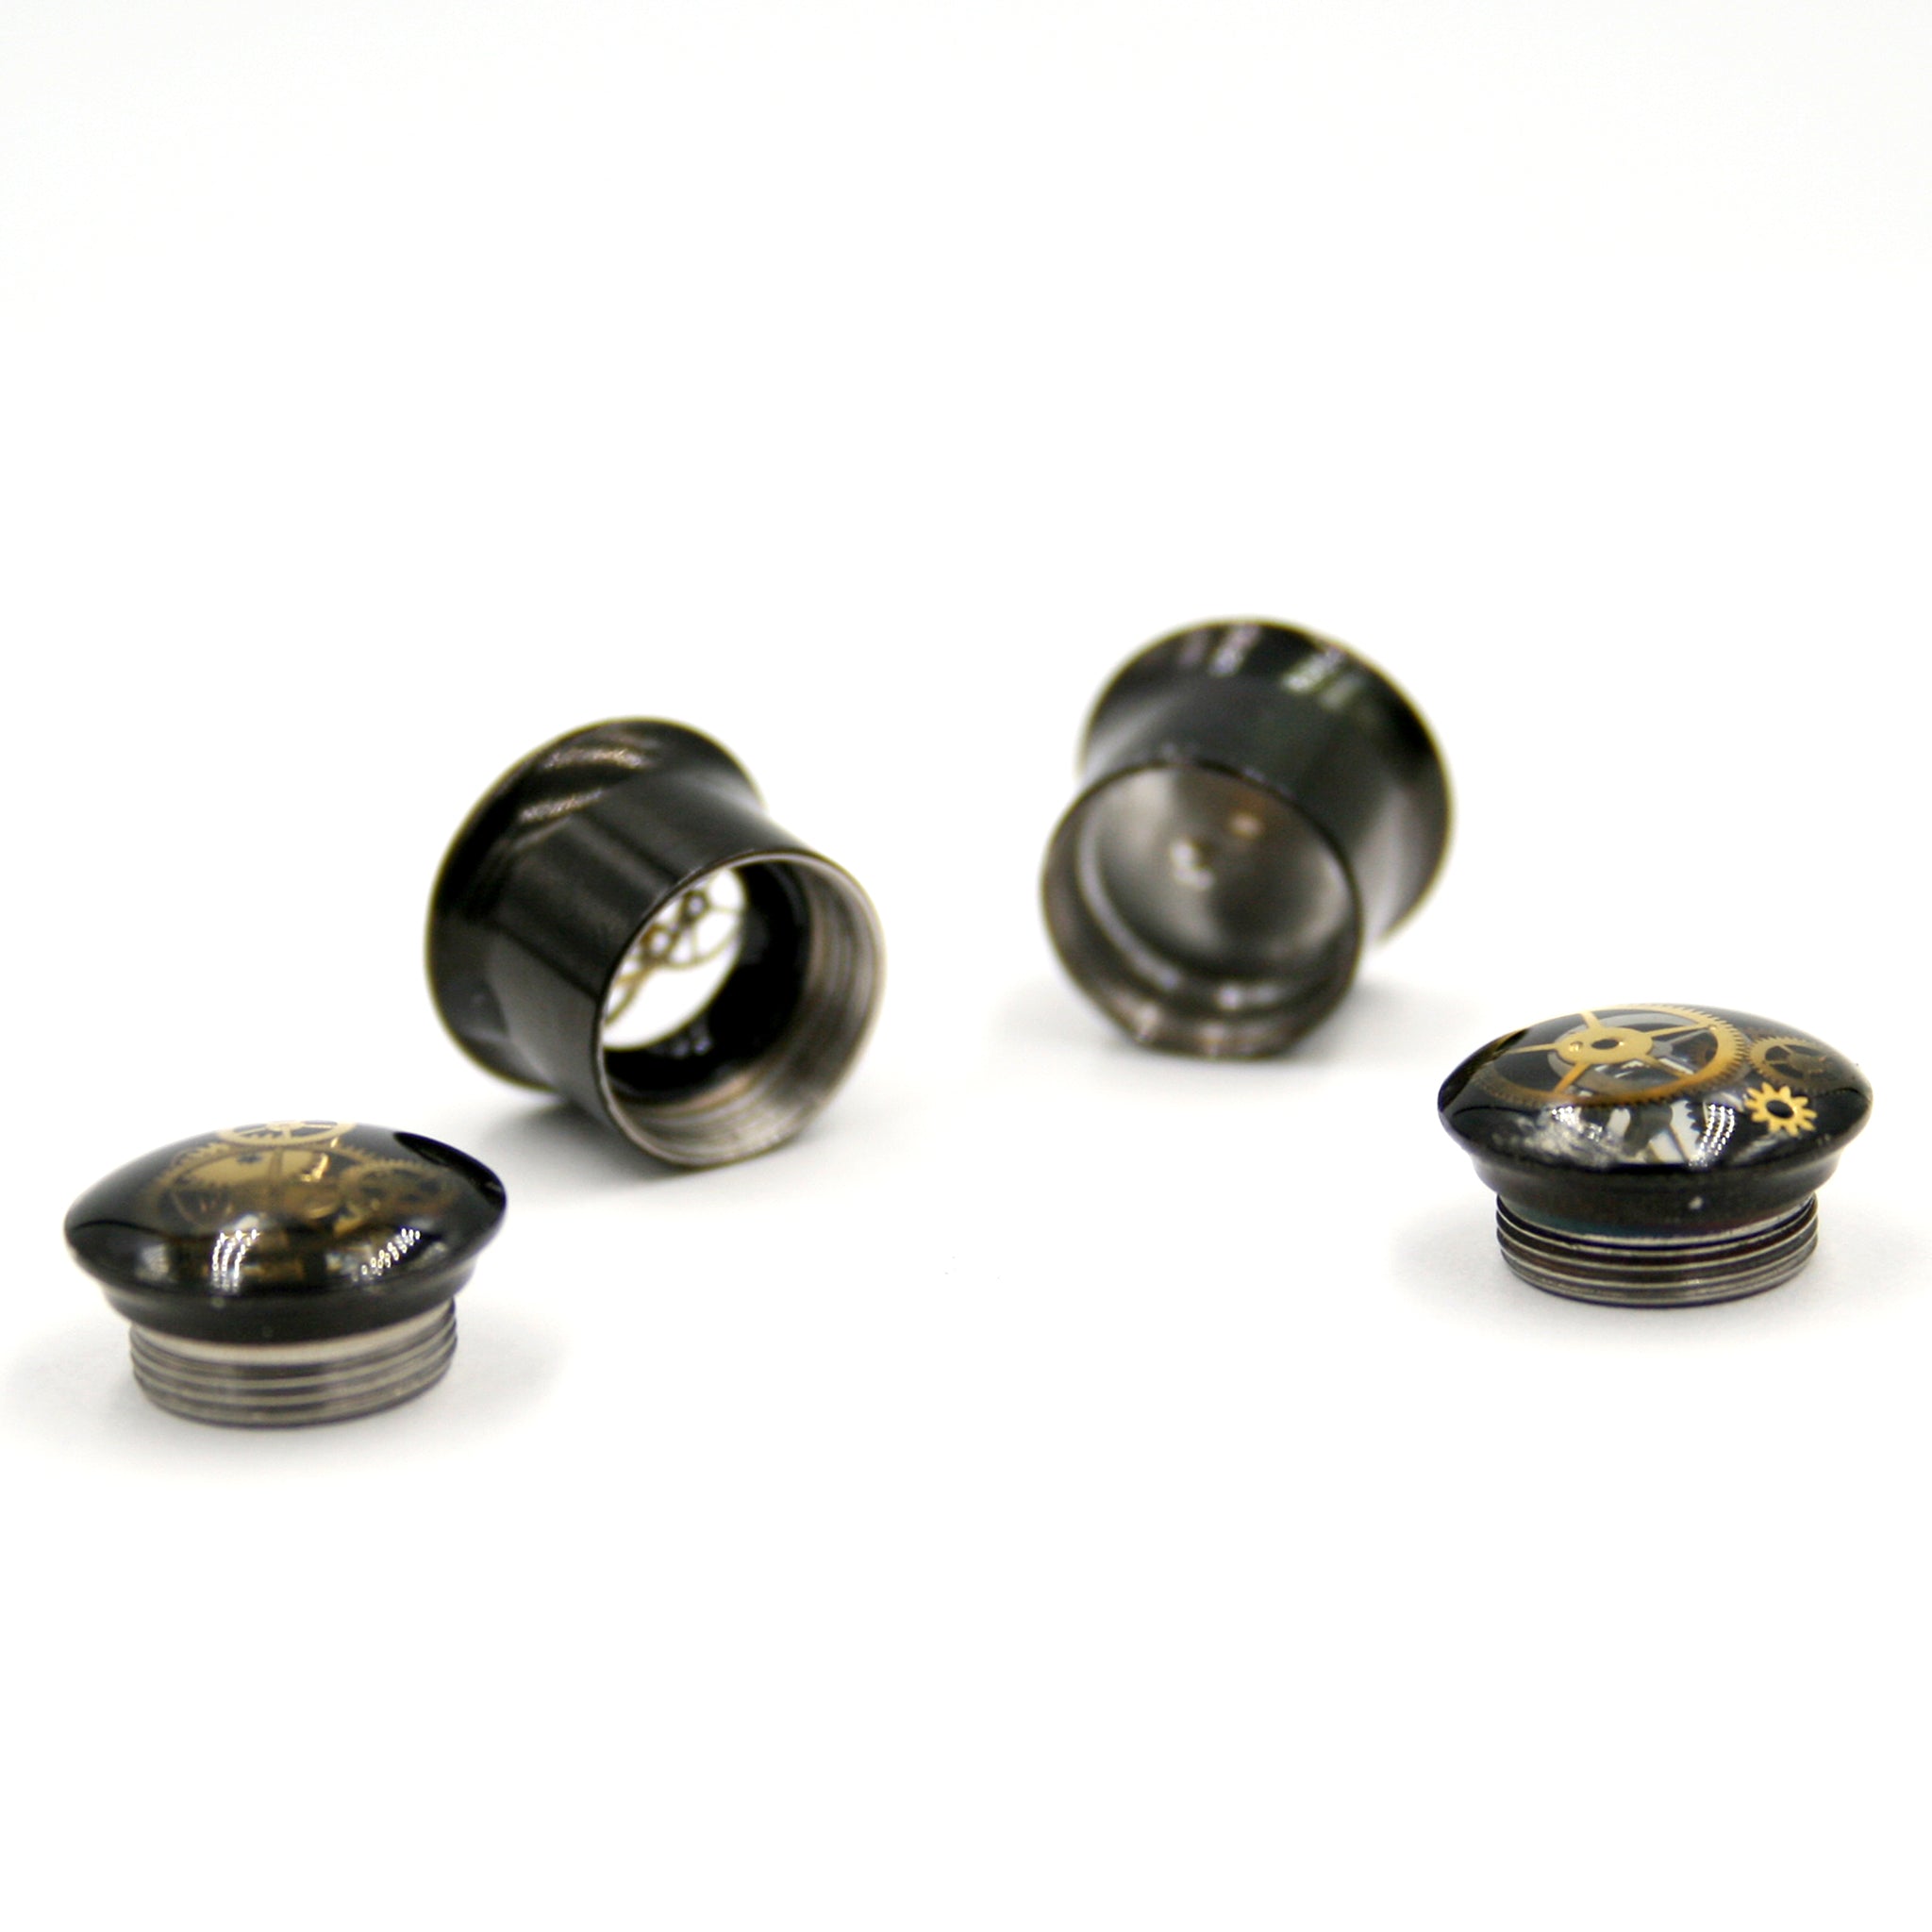 14mm screw back black ear gauges in steampunk style